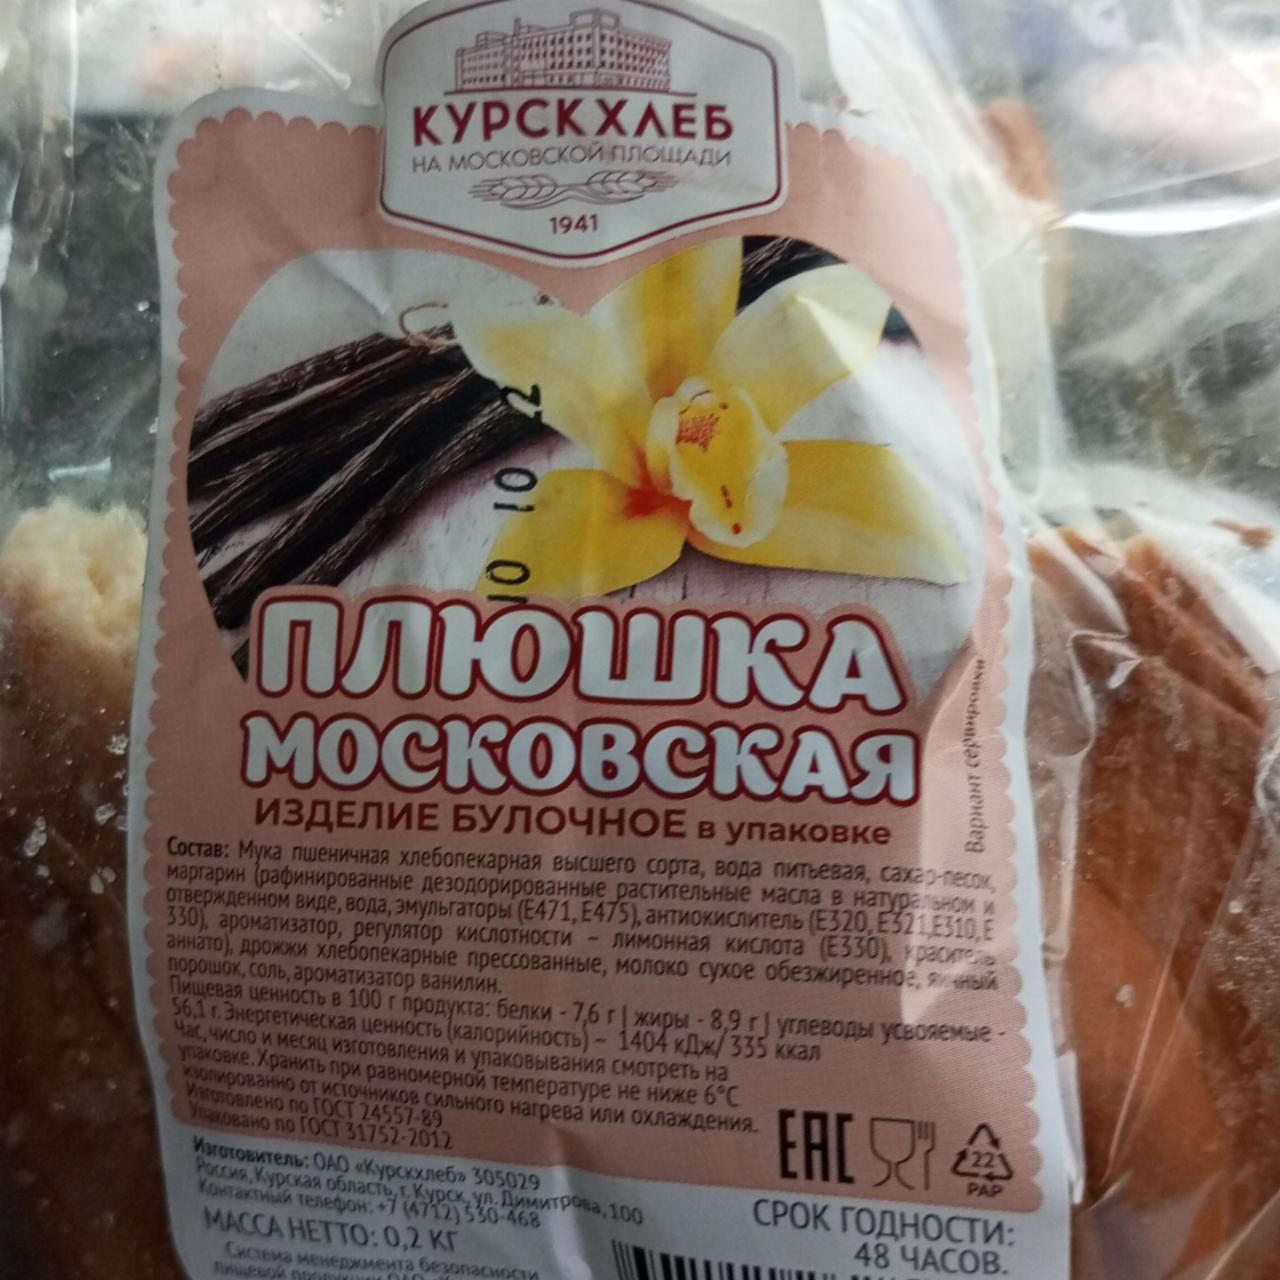 Фото - Плюшка Московская Курск хлеб